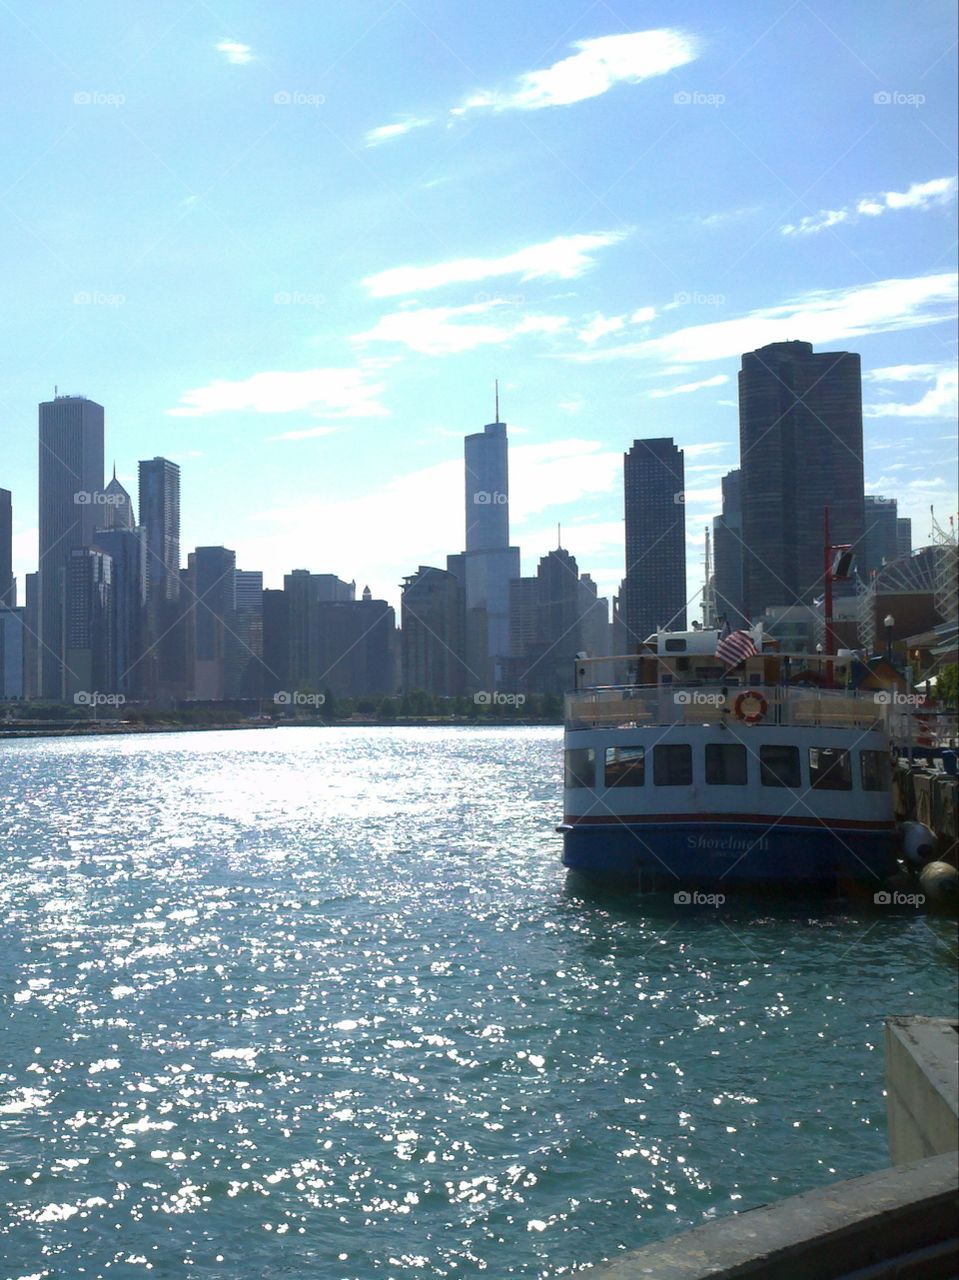 Chicago's Navy Pier.